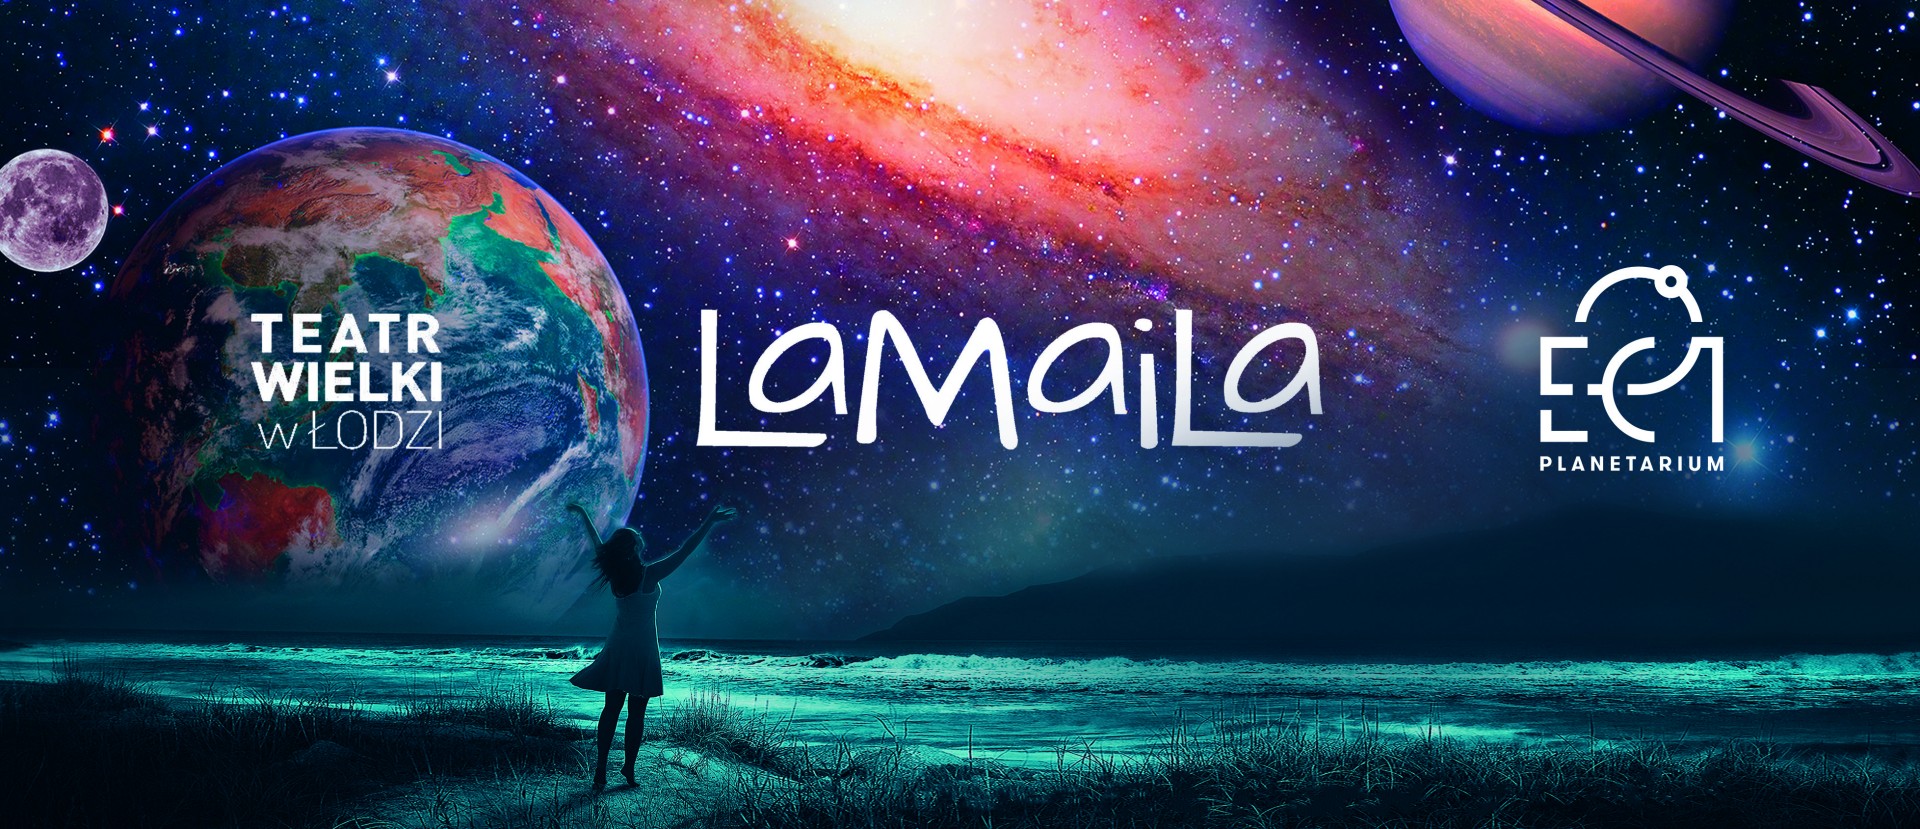 Lamaila: Planetarium EC1 zaprasza do Teatru Wielkiego